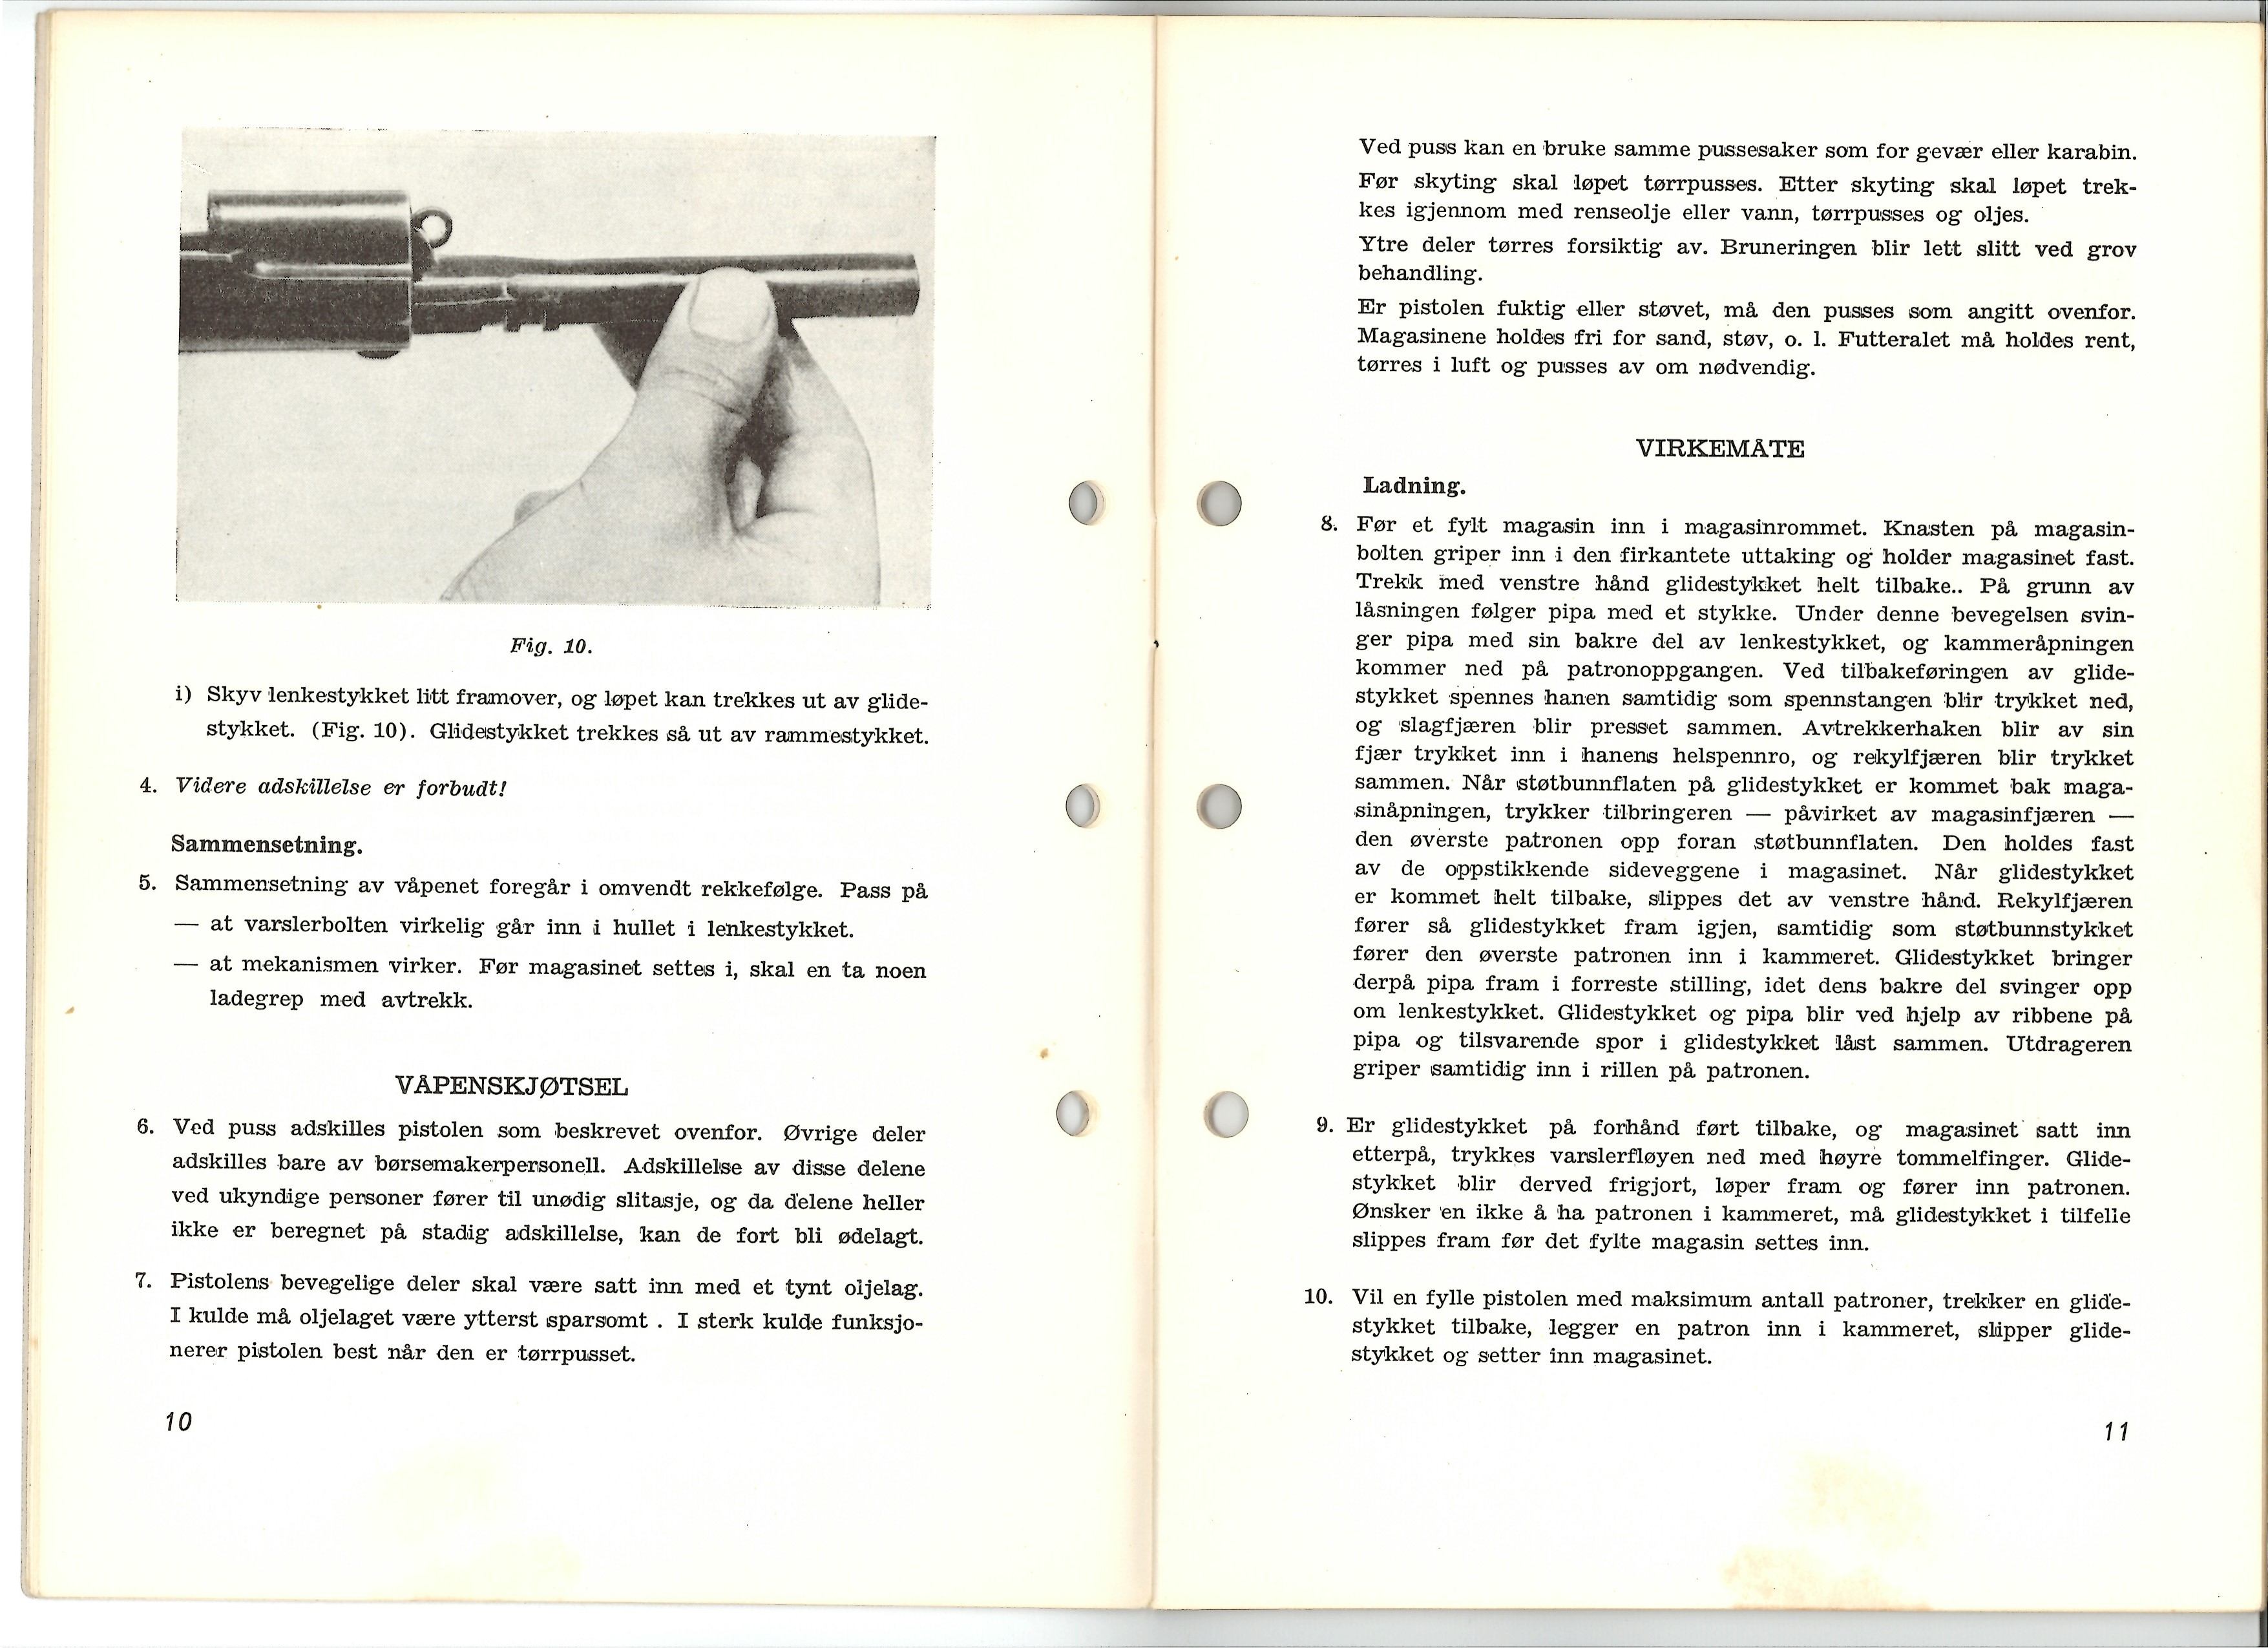 ./doc/reglement/M1914/Colt-M1914-Instruks-for-skyting-1956-7.jpg